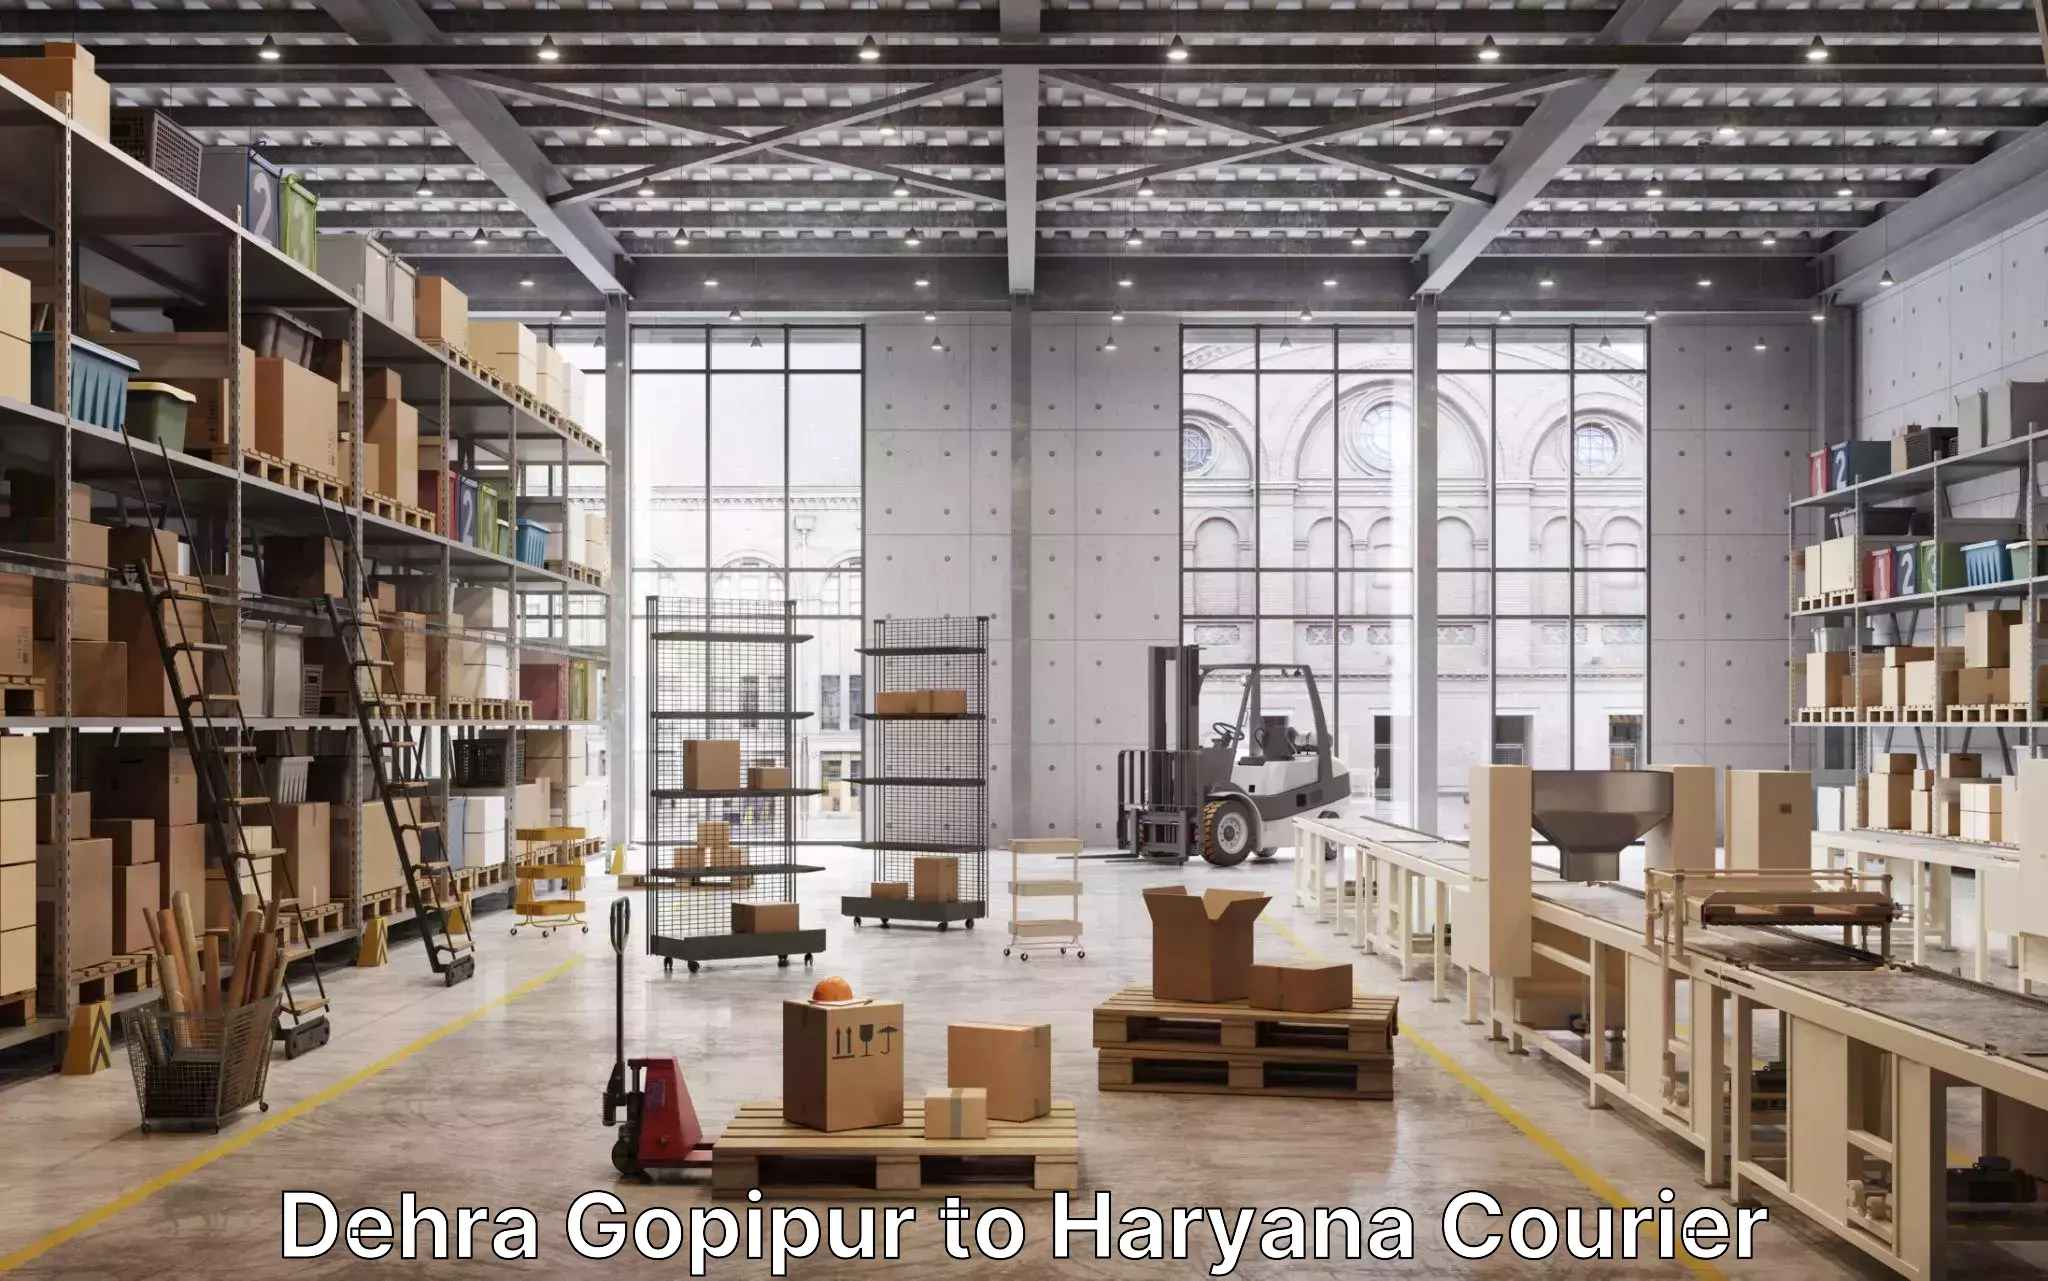 Furniture moving experts Dehra Gopipur to Ambala